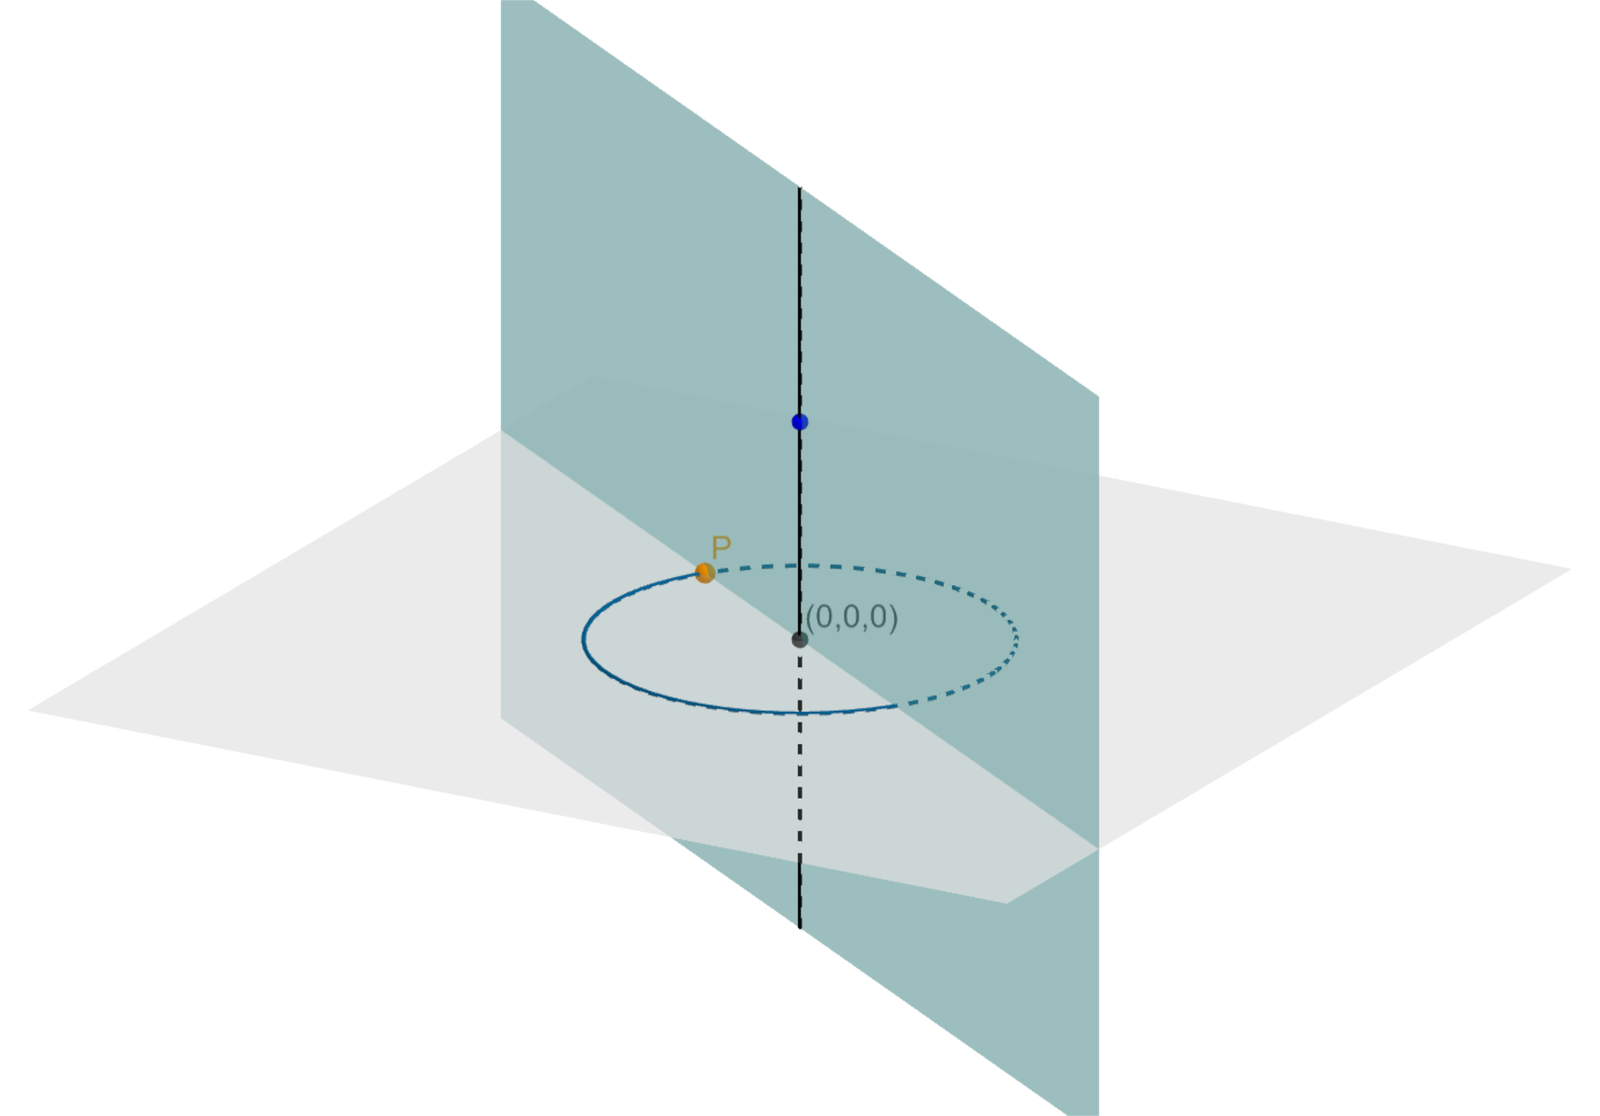 Aplet przedstawia konstrukcję, która pozwala na tworzenie dowolnych brył obrotowych, tak zwaną maszynkę do tworzenia brył obrotowych. Jej działanie jest podobne do tworzenia rozmaitych kształtów obrotowych na kole garncarskim. Garncarz w wyniku obrotu wokół pionowej osi kształtuje kawałek gliny w różne kształty obrotowe, np.: doniczki, dzbanki. Kreślimy na płaszczyźnie XY okrąg o środku w punkcie O i współrzędnych (0, 0), który przechodzi przez punkt na osi OX Na okręgu obieramy dowolny punkt P i przesuwamy go po okręgu. Prowadzimy płaszczyznę przez oś OZ i punkt P. Kreślimy w płaszczyźnie łamaną dowolnego kształtu. Łamana tworzy ślady, otrzymujemy różne bryły obrotowe.